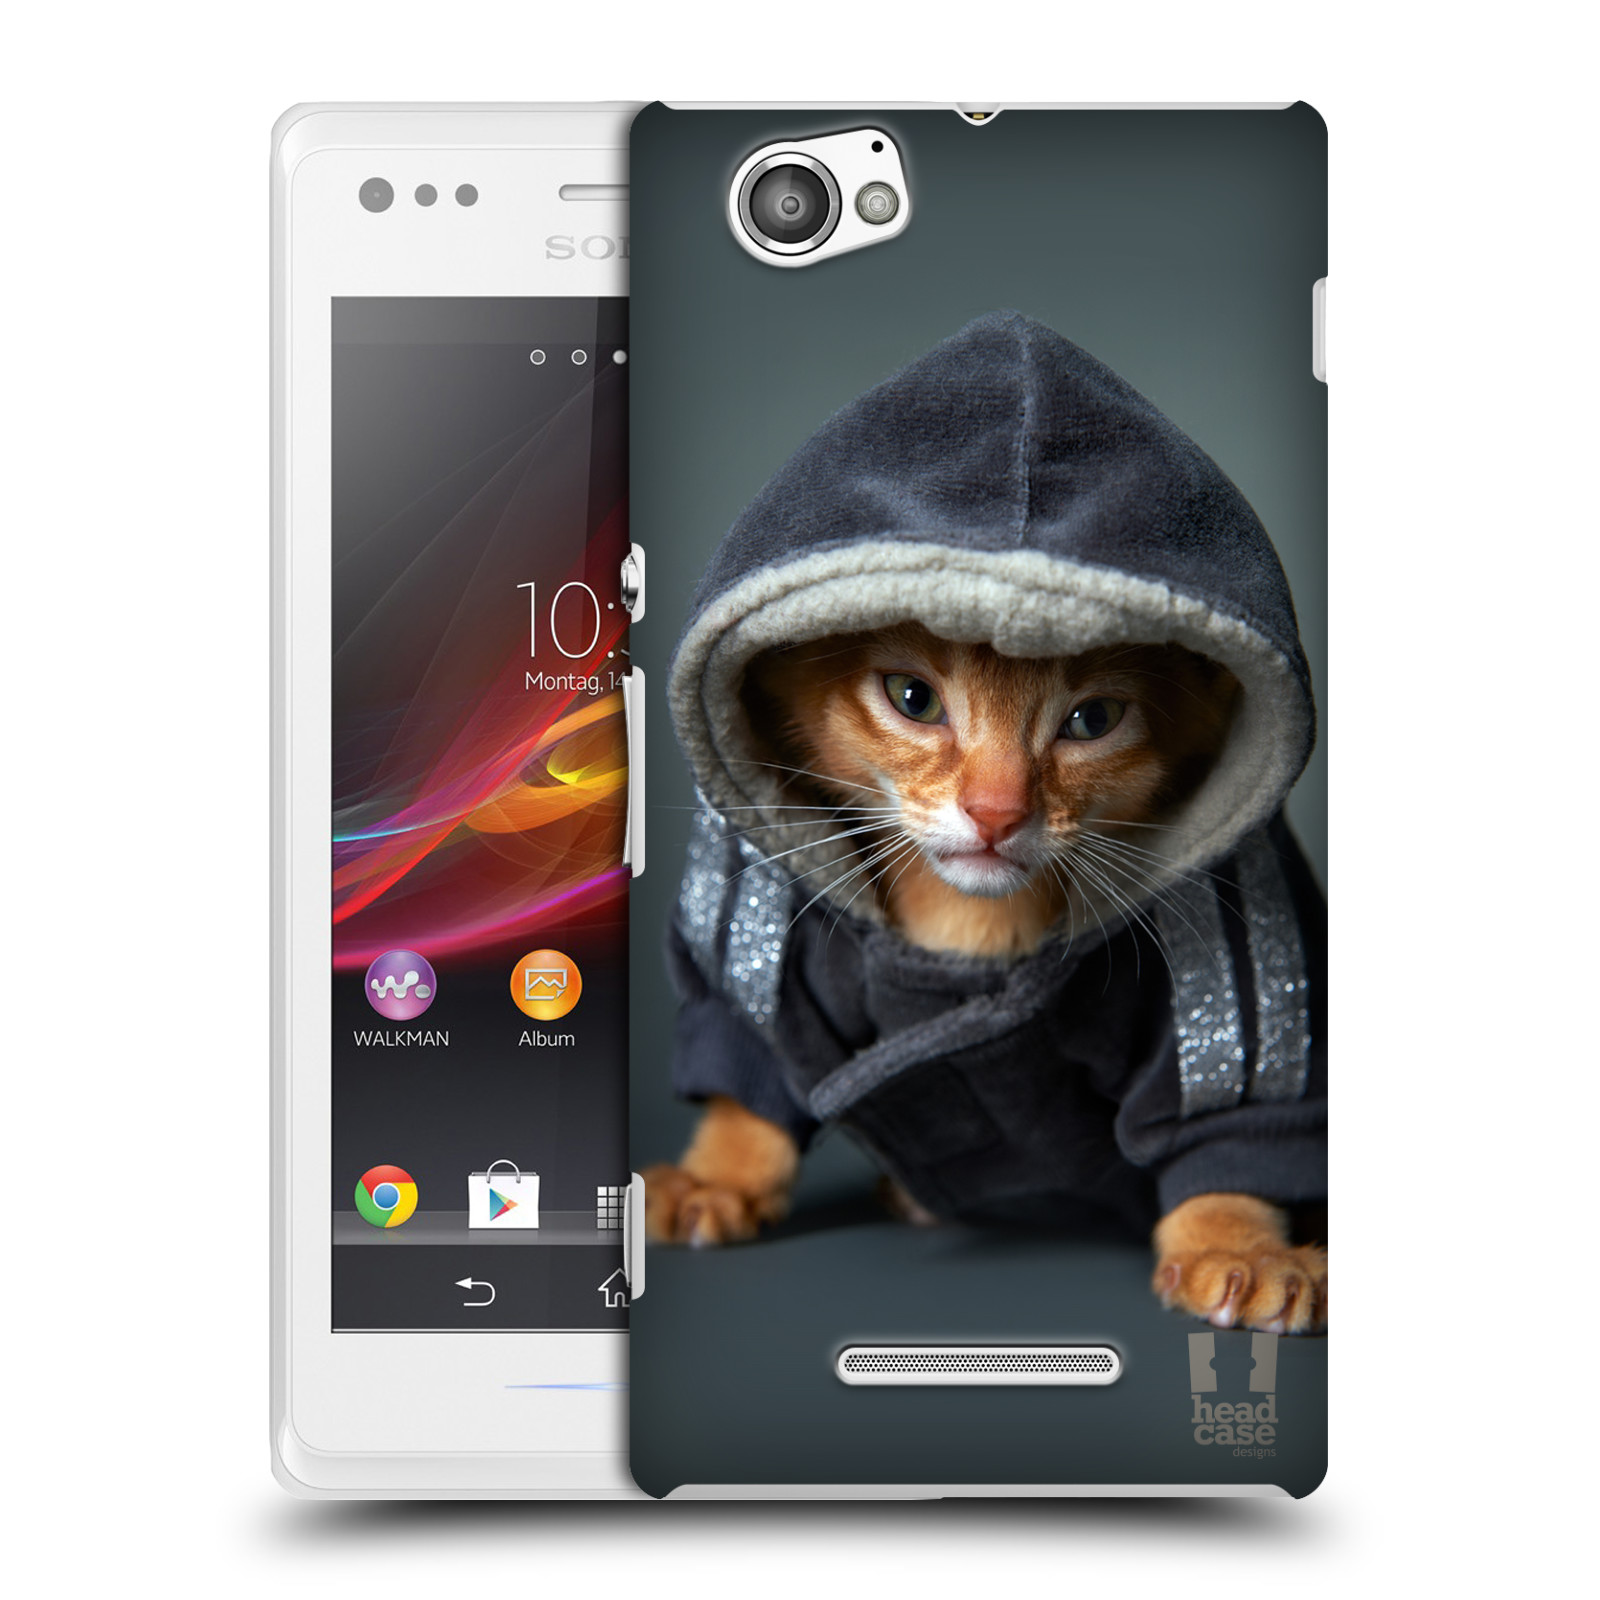 HEAD CASE plastový obal na mobil Sony Xperia M vzor Legrační zvířátka kotě/kočička s kapucí